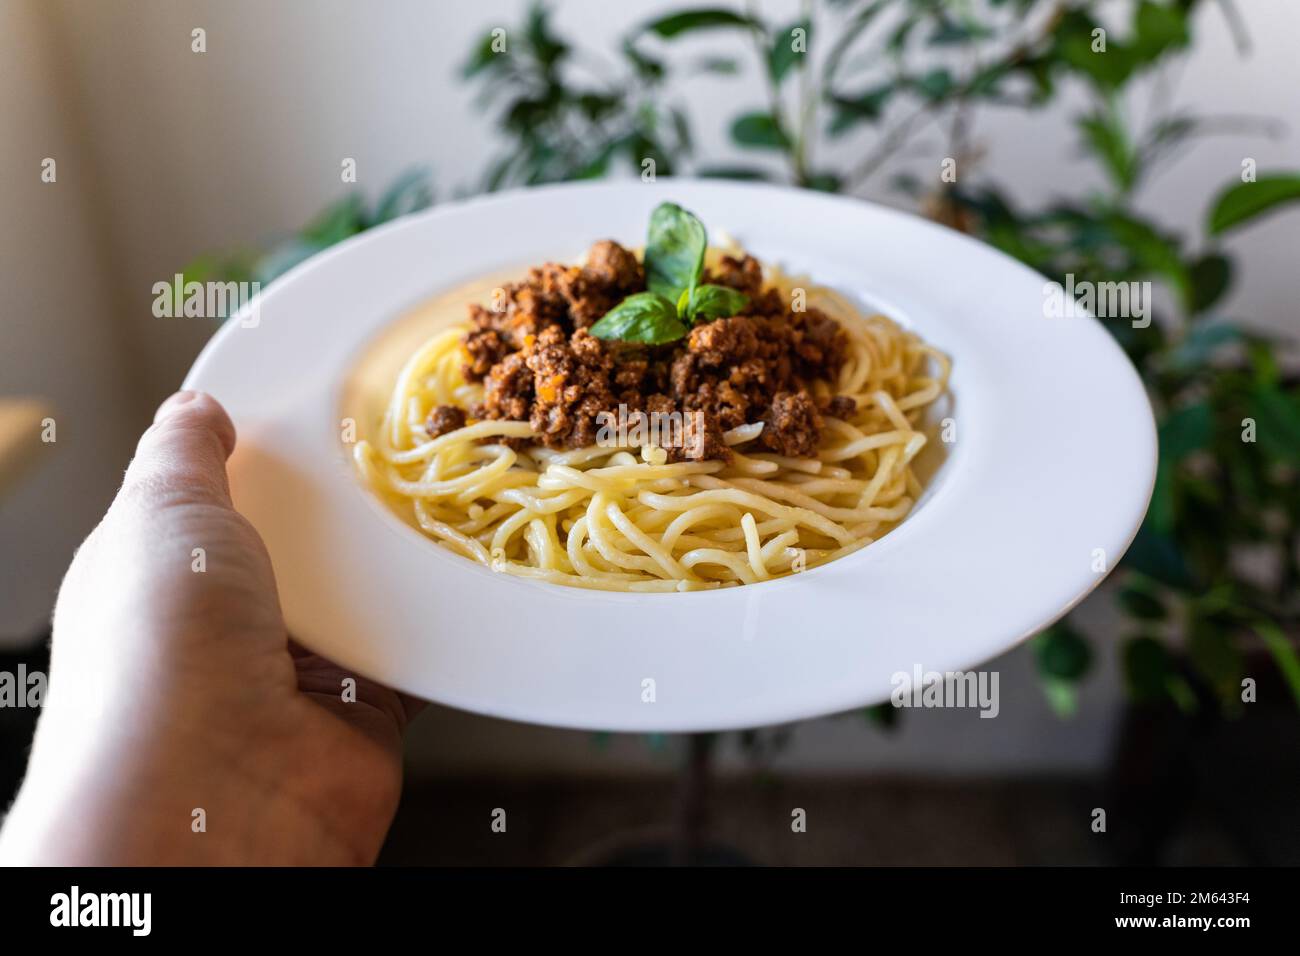 Piatto con pasta italiana classica spaghetti bolognese in mano. Foto Stock